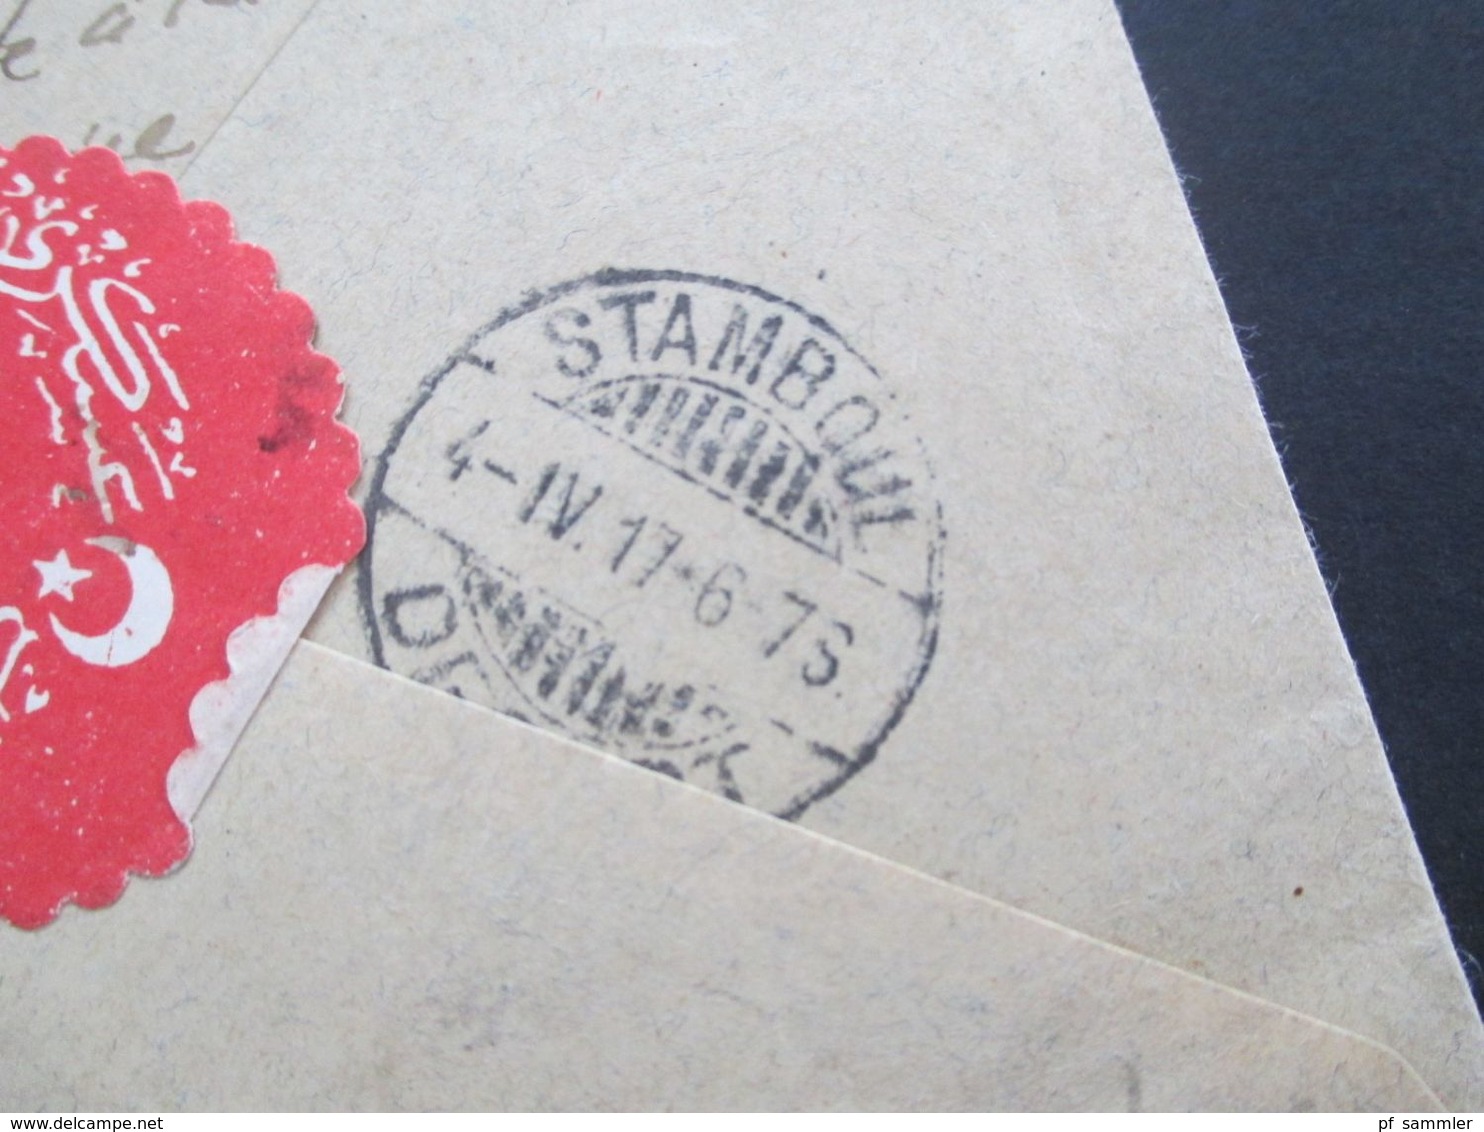 Türkei 1917 Einschreiben ?! 2 Marken mit Aufdruck auf Brief in die Schweiz mit rotem Papiersiegel!!